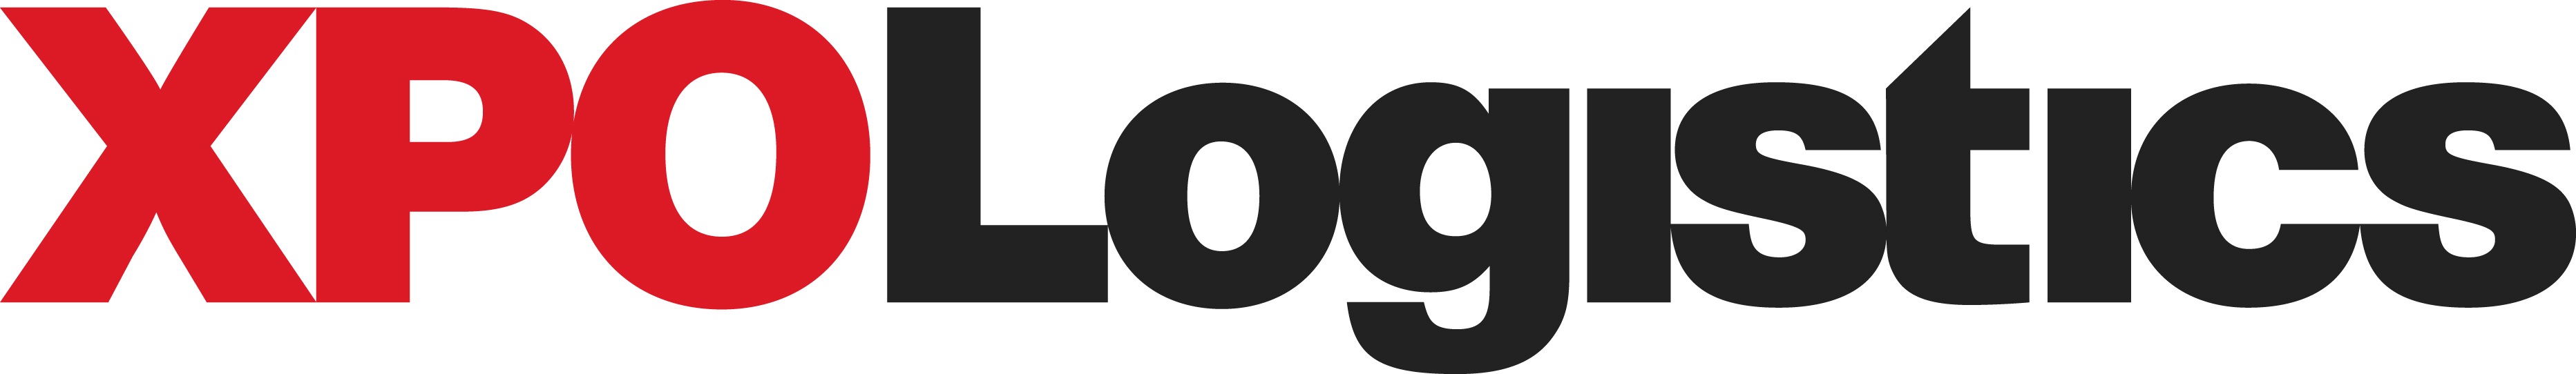 xpo_logo2018.jpg